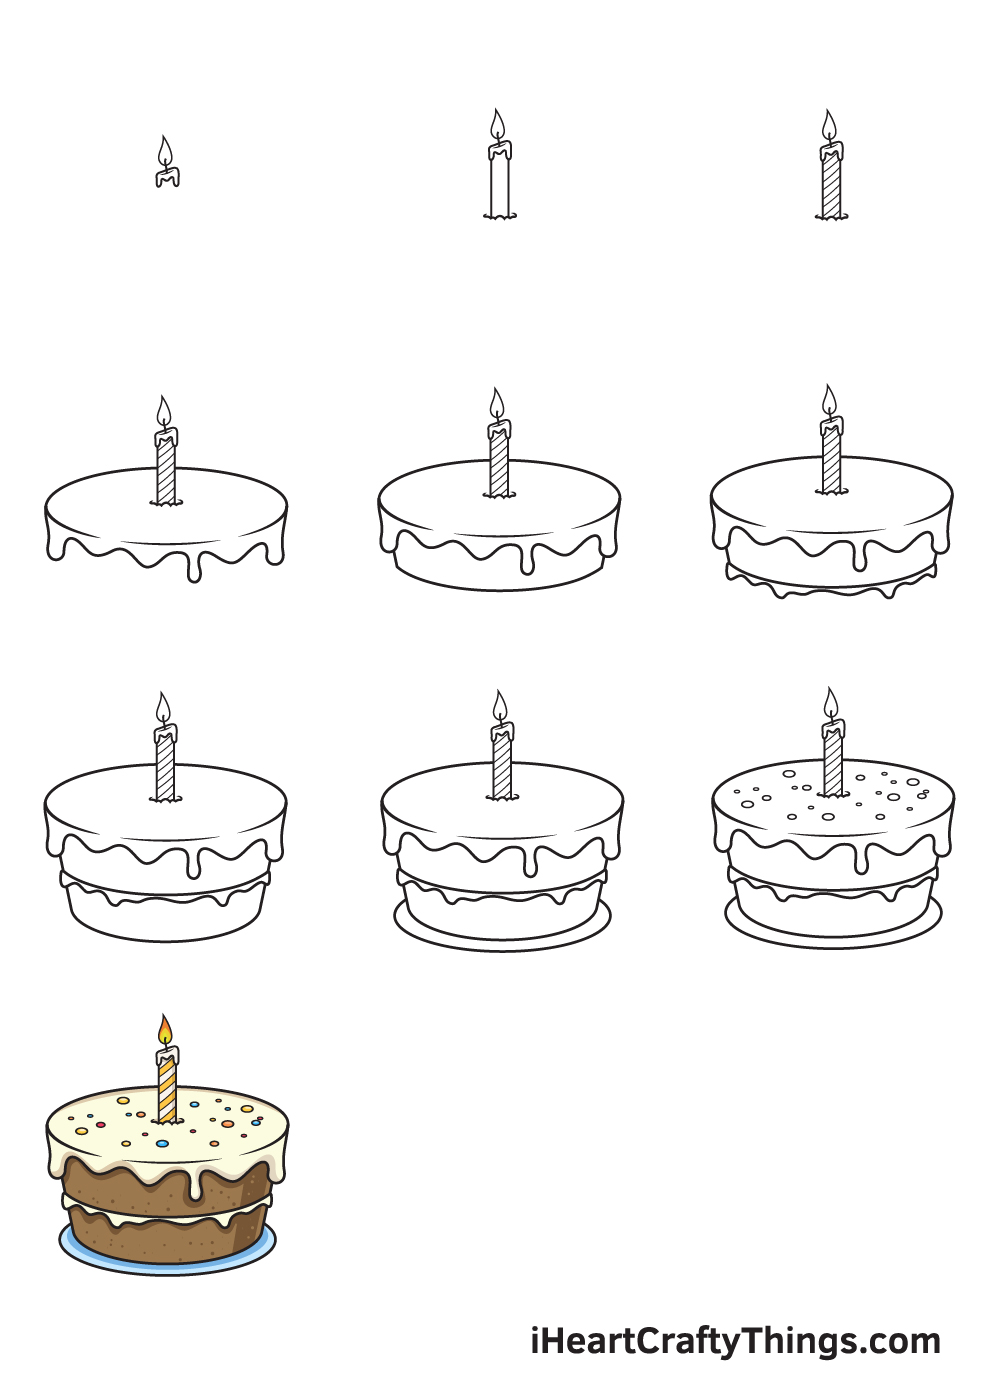 Drawing Birthday Cake in 10 Easy Steps - Hướng dẫn cách vẽ bánh sinh nhật đơn giản với 9 bước cơ bản